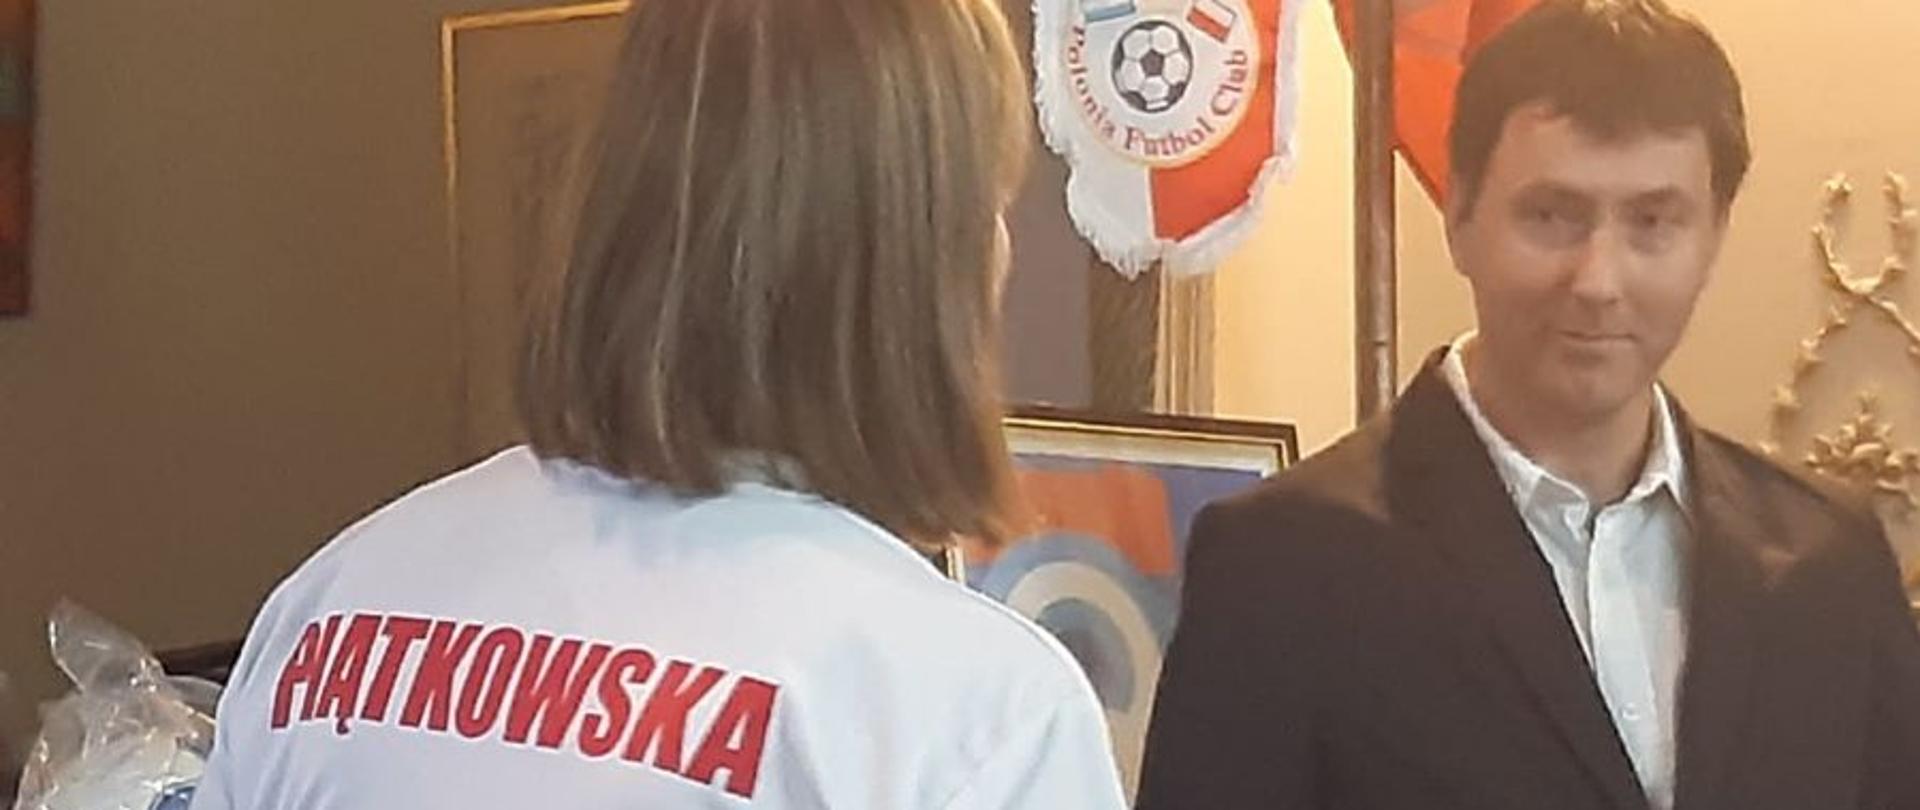 El club de fútbol Polonia Fútbol Club de Buenos Aires celebró su 15 aniversario. Fue un gran pretexto para promover la historia, no solo del deporte.